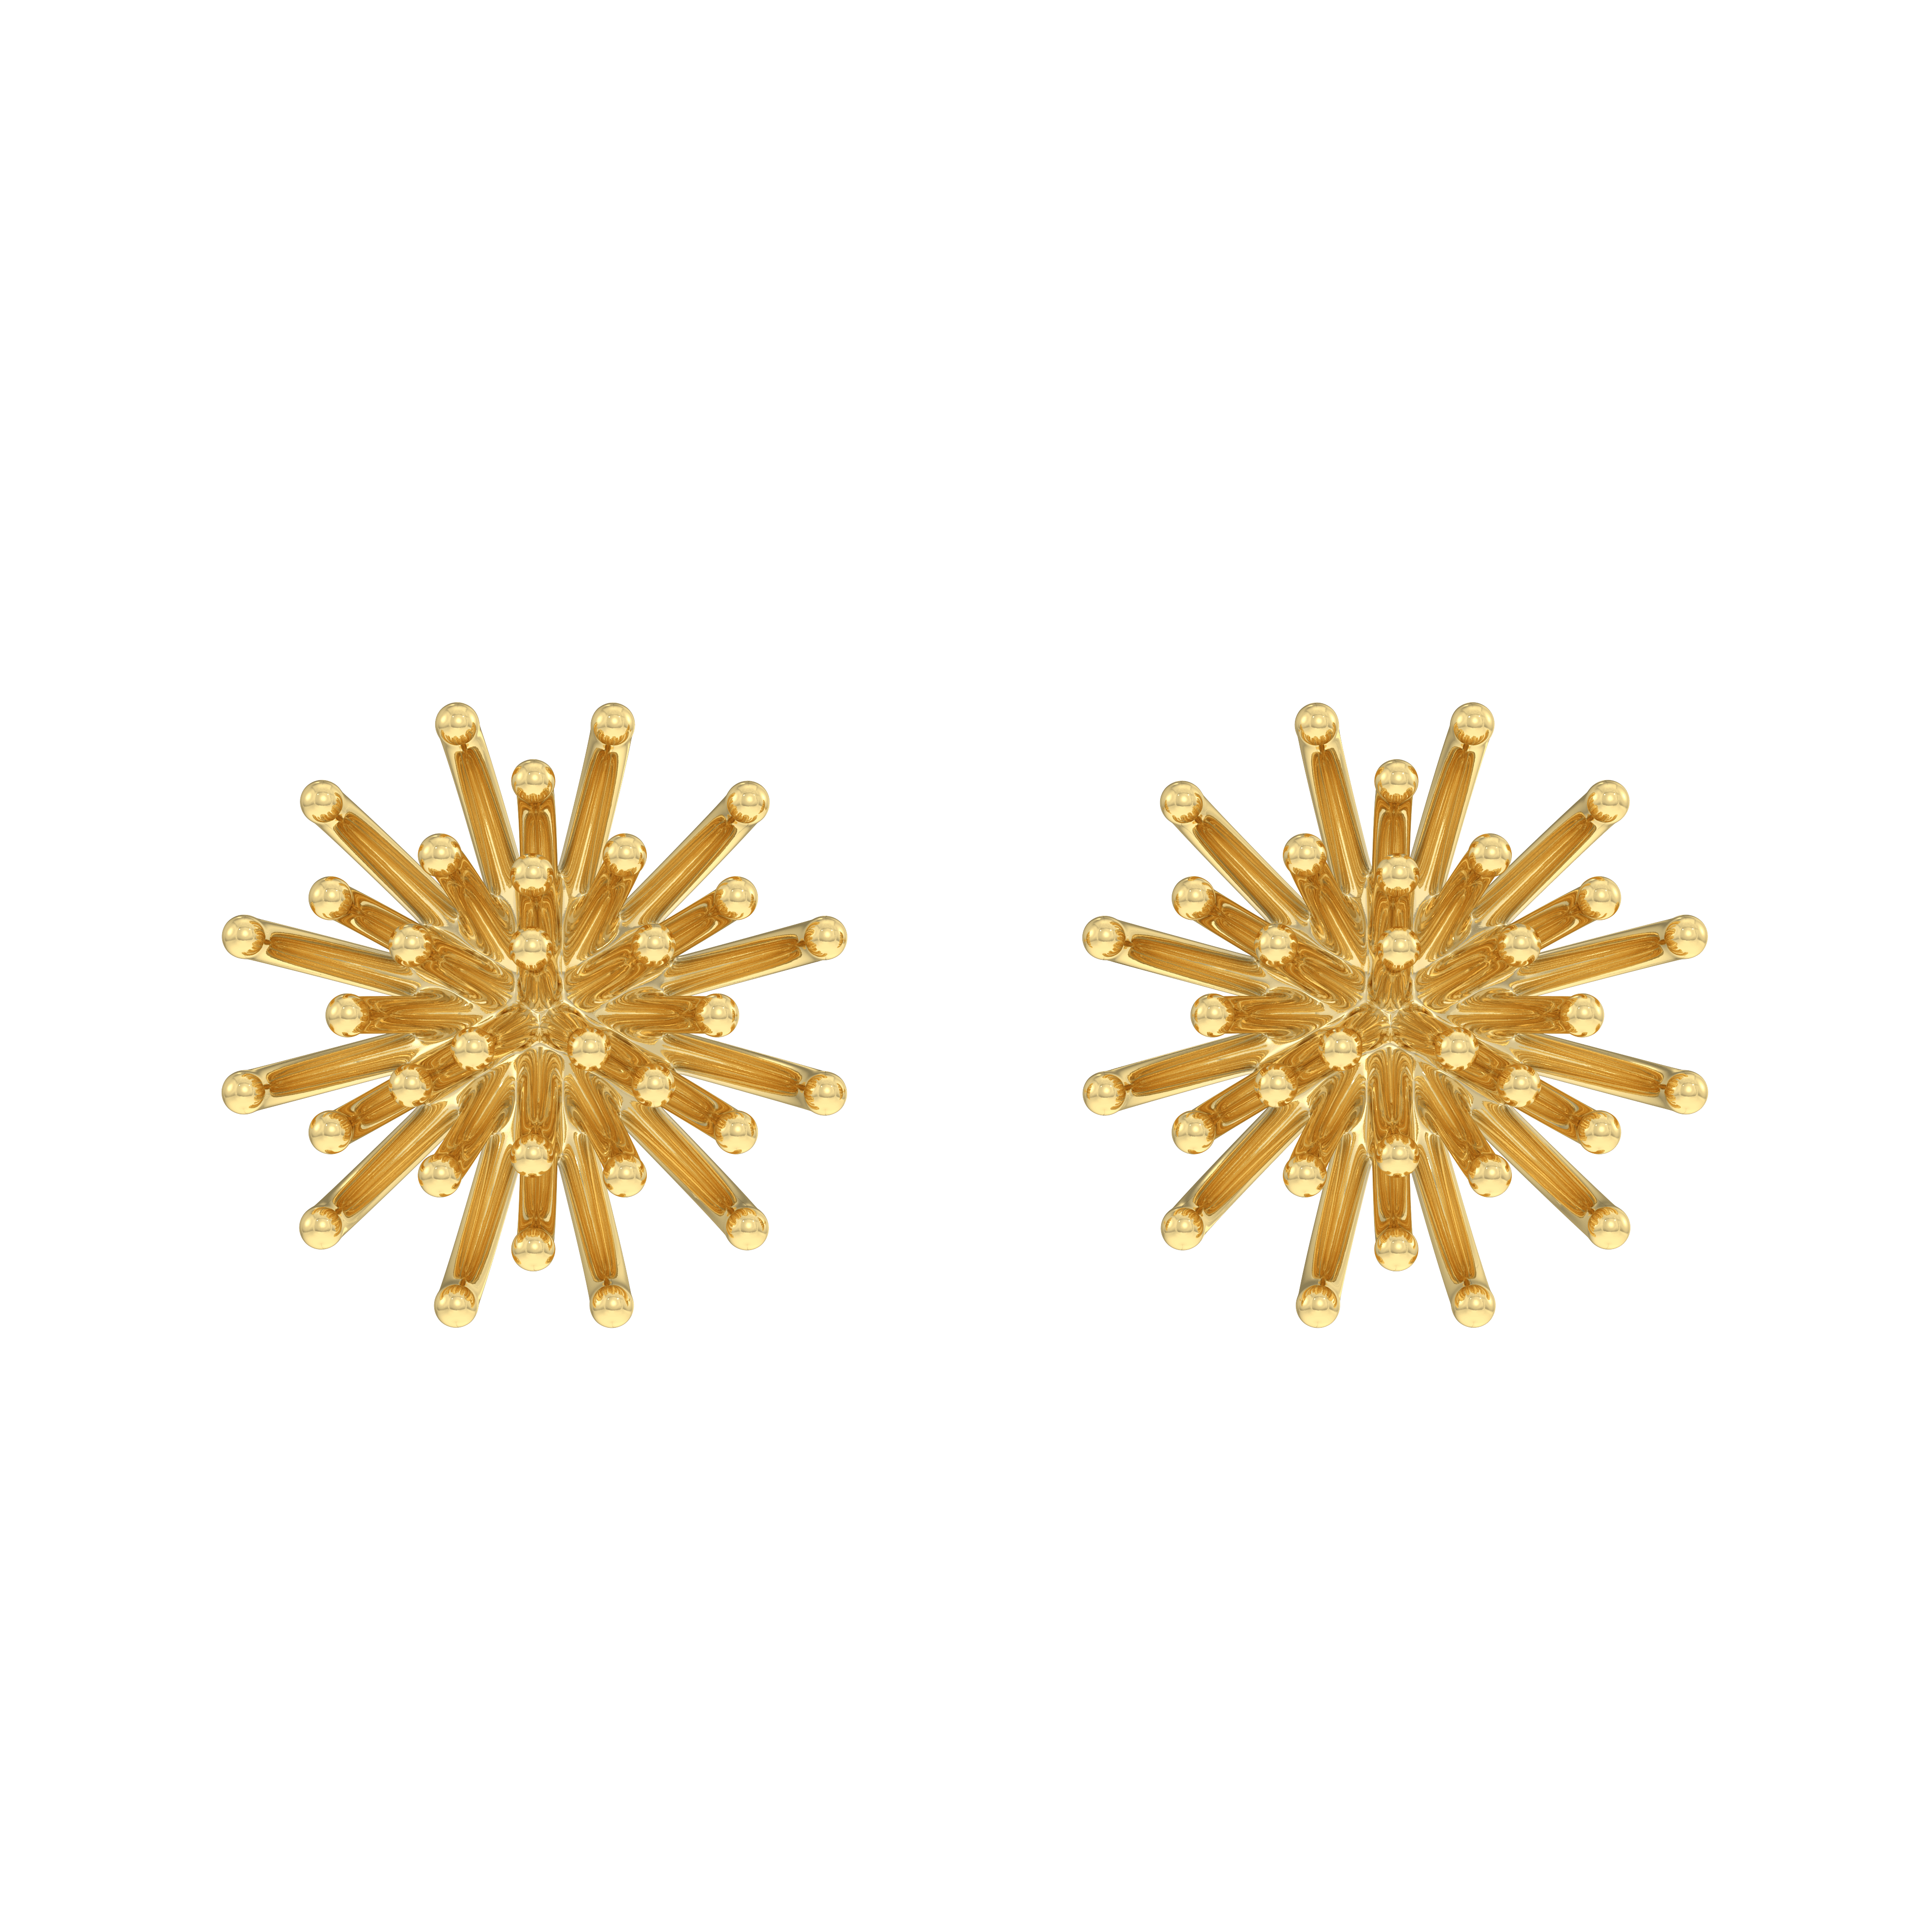 22k Gold Anemone Earrings